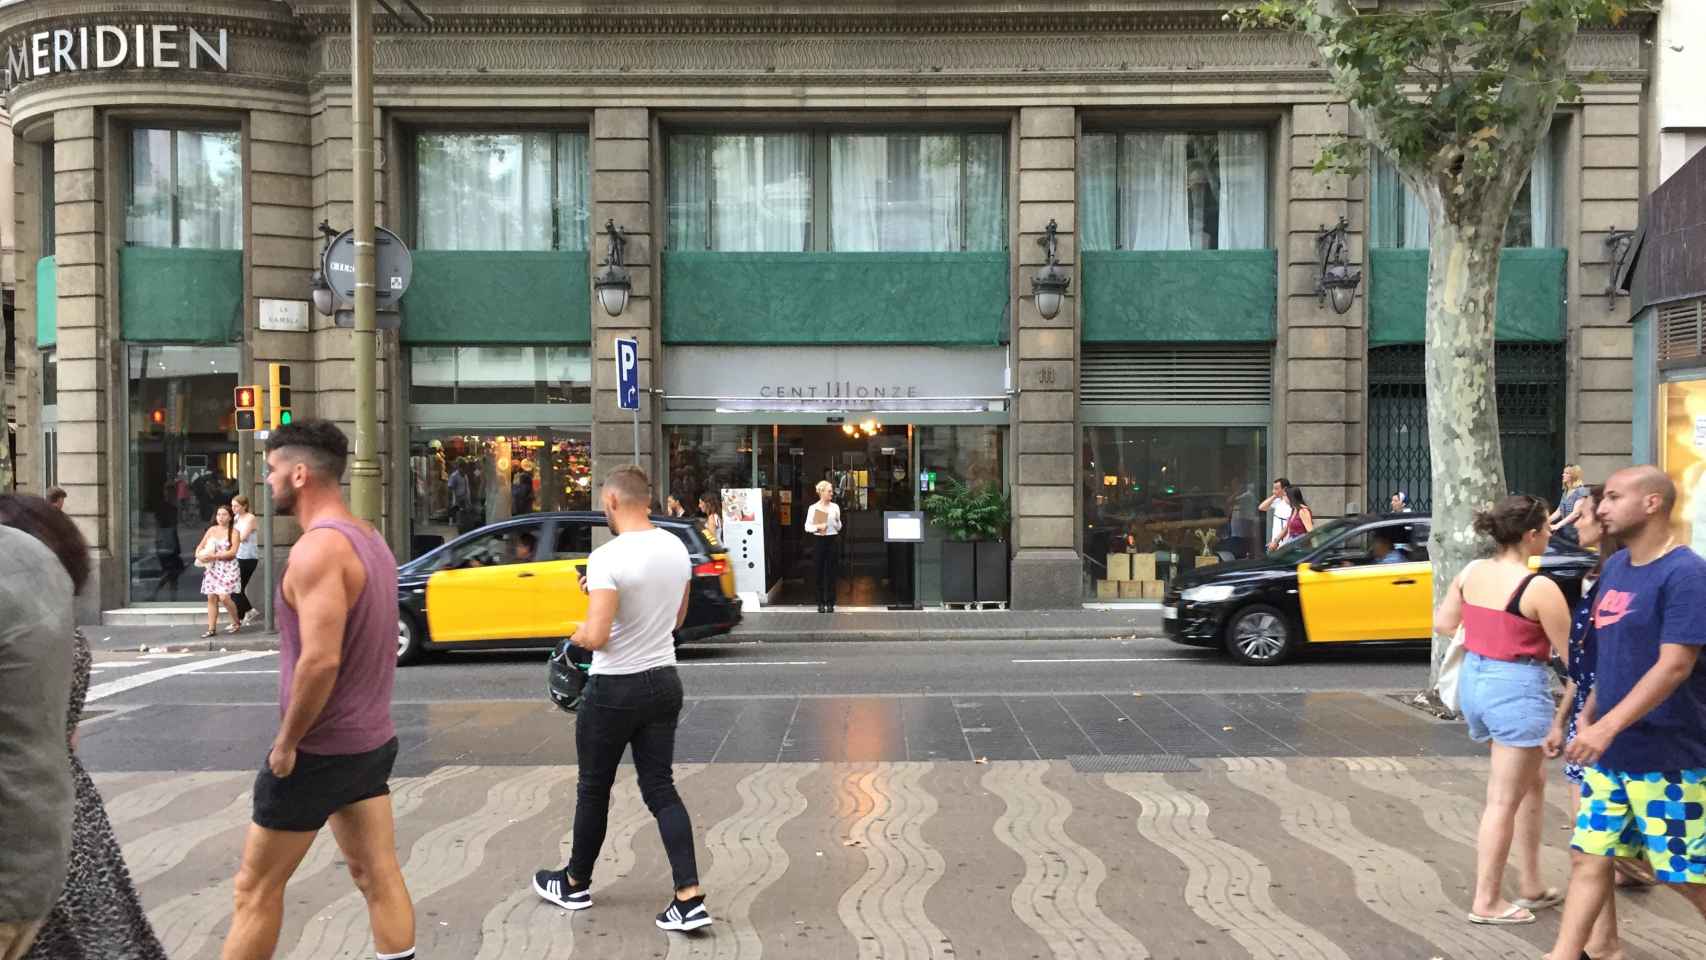 Es uno de los hoteles más famosos de Barcelona y en su ubicación hay otra zona sin bloquear